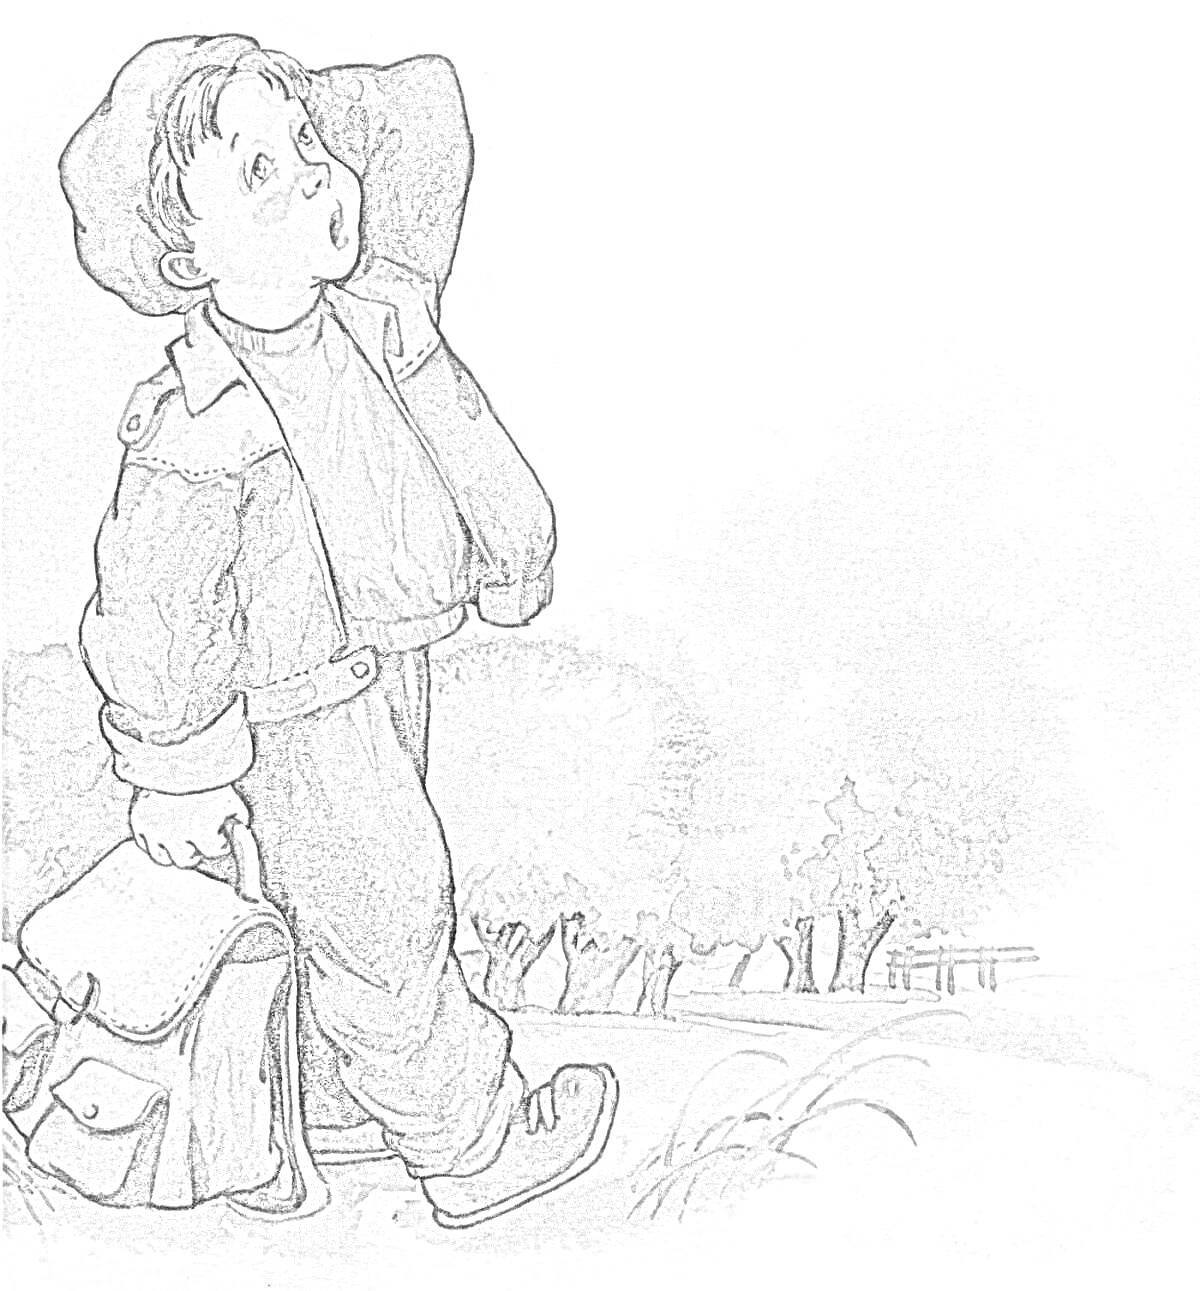 РаскраскаМальчик Женя с портфелем на фоне деревьев